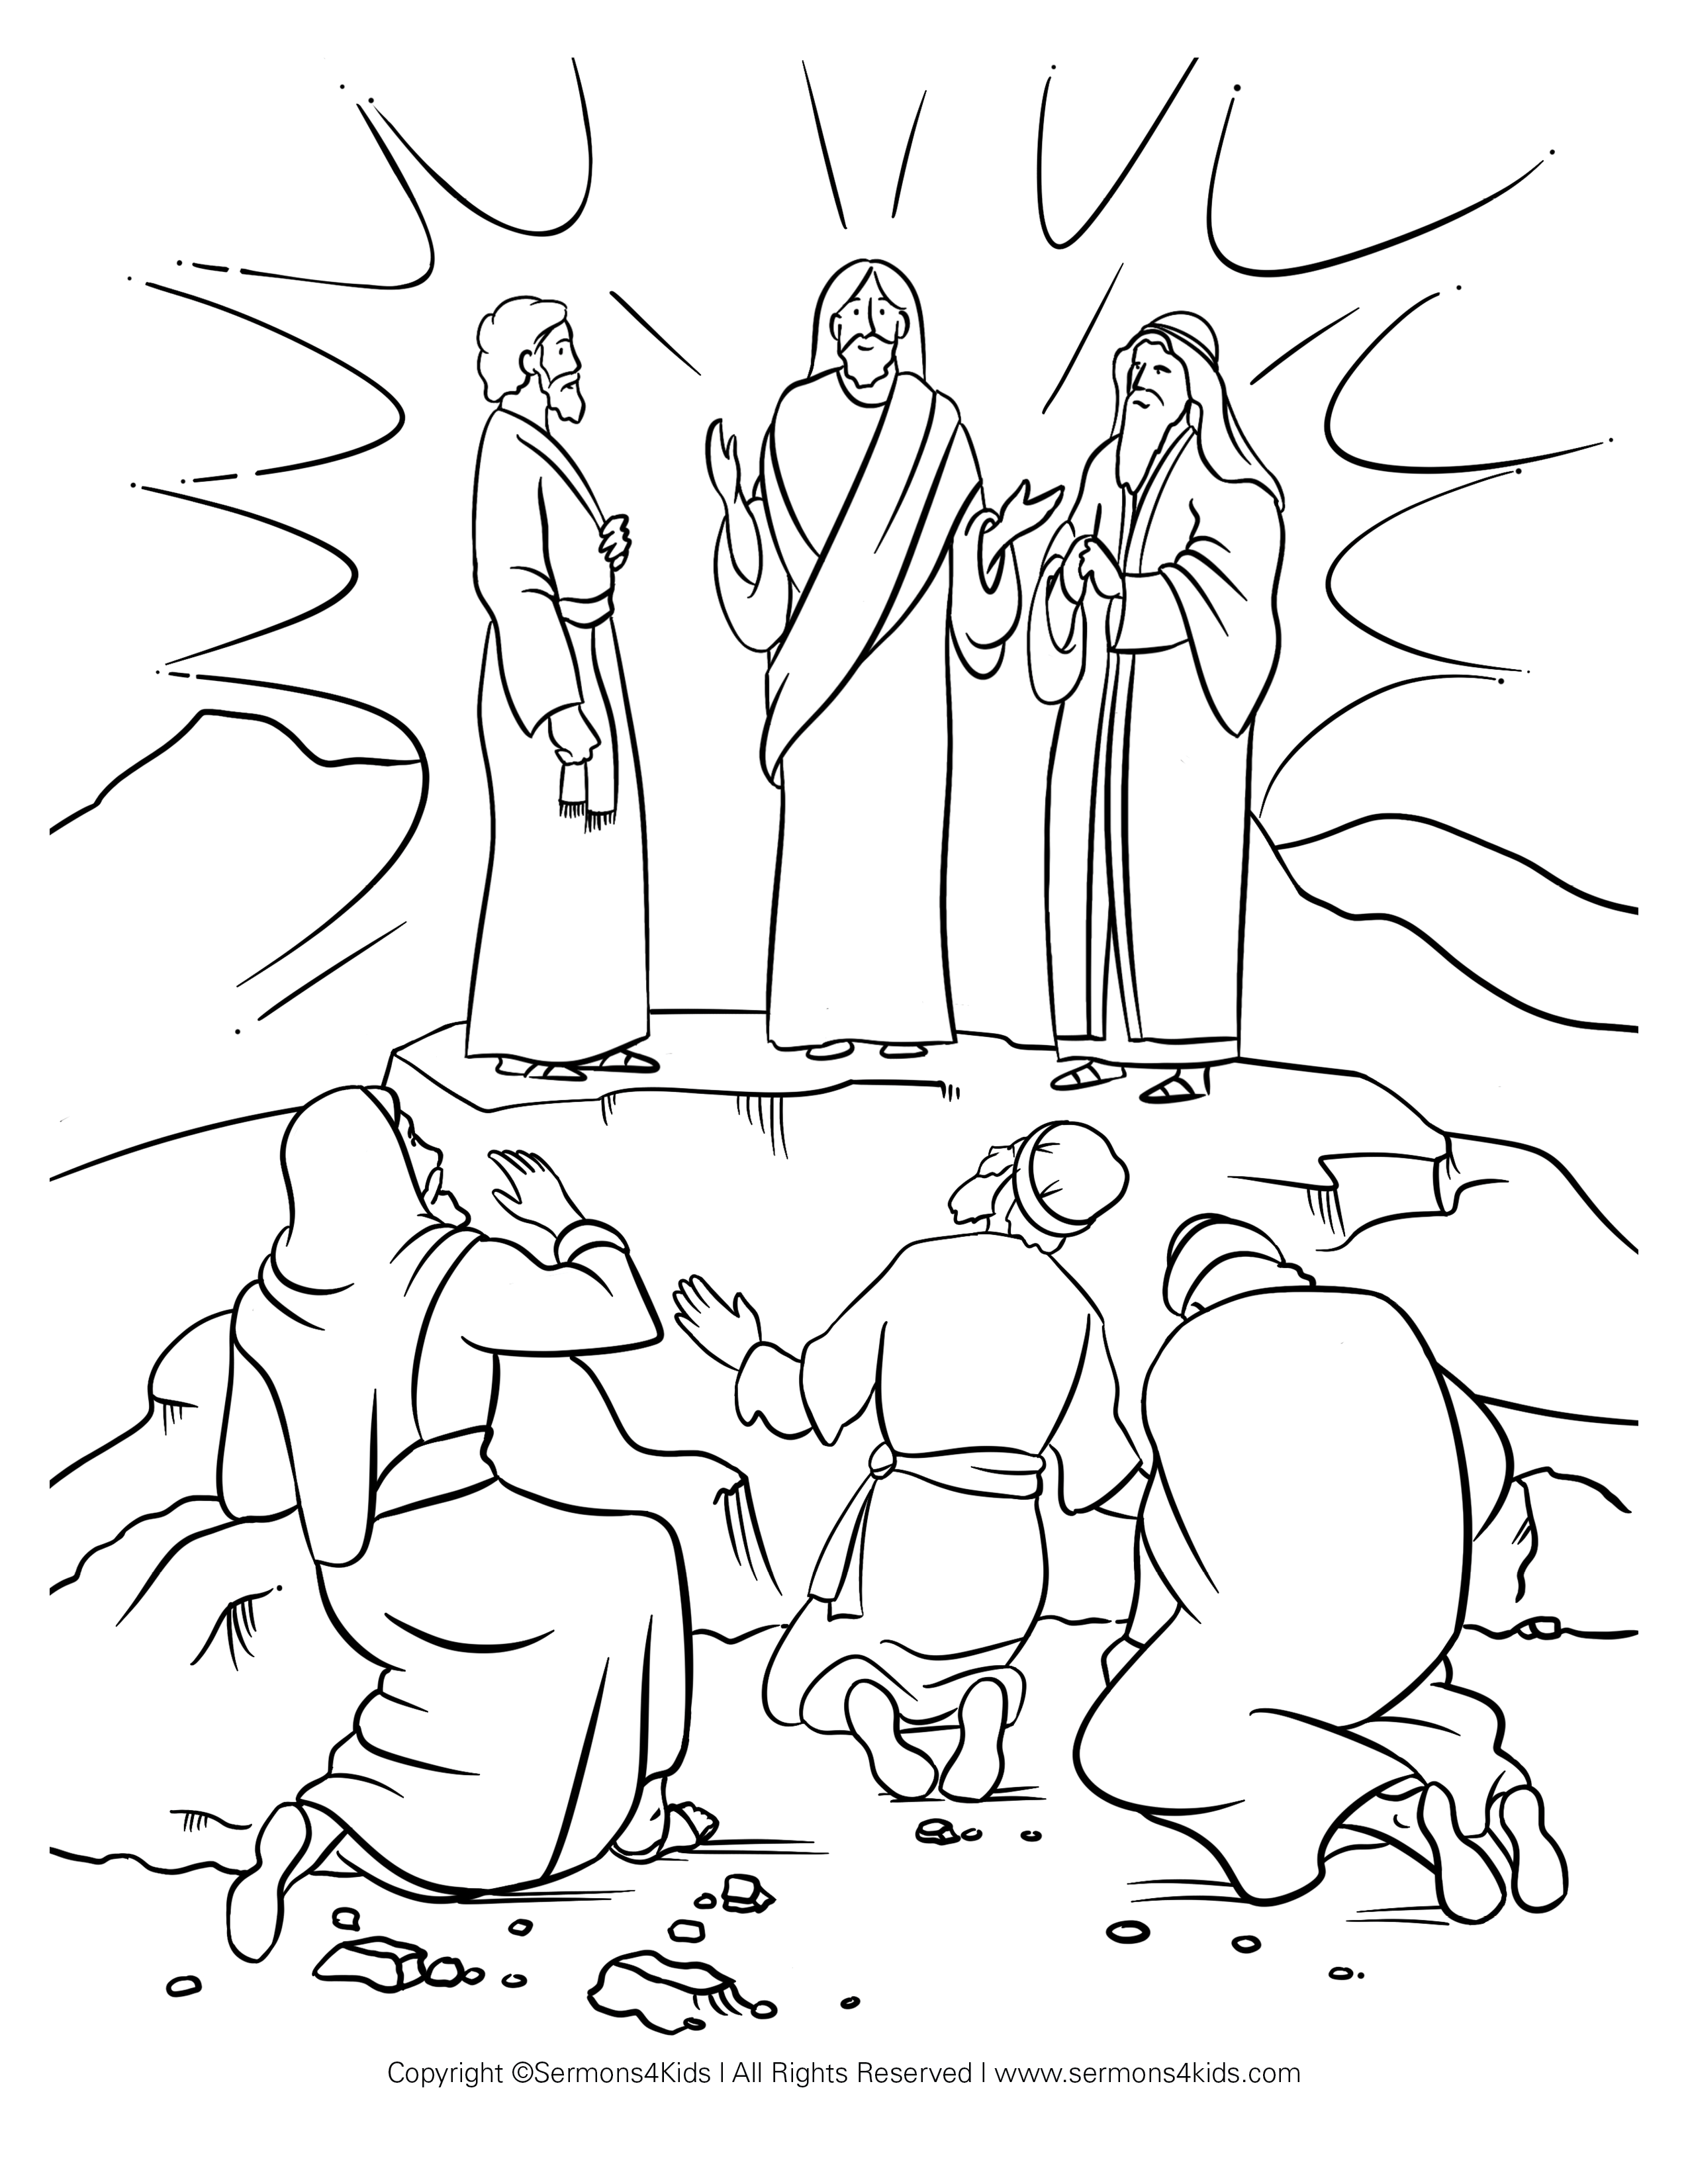 La transfiguración